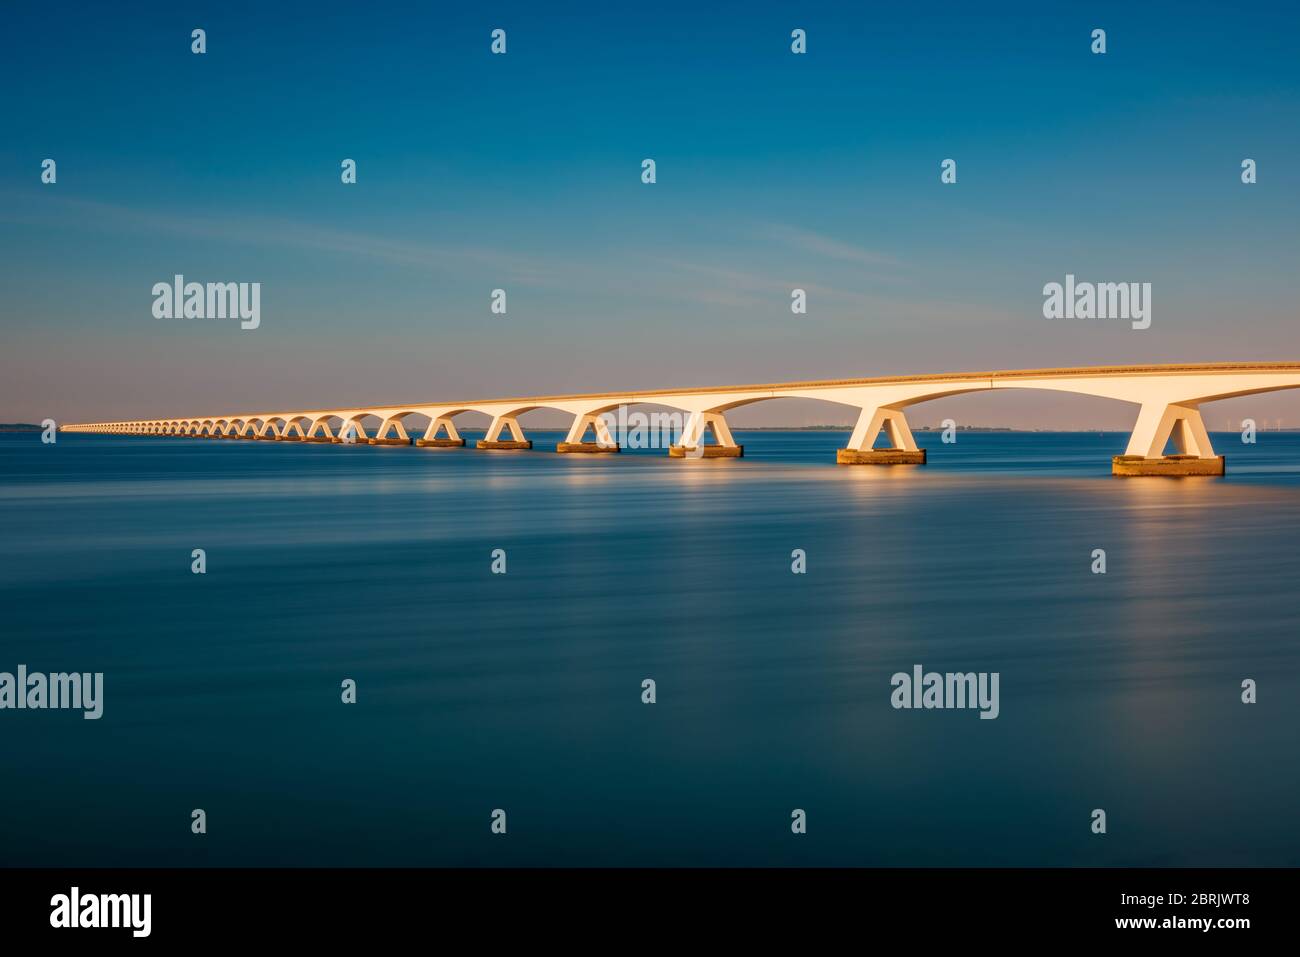 Larga exposición del Puente de Zelanda en Zierikzee, provincia de Zelanda, países Bajos alrededor de la puesta de sol. Con 5 km es el puente más largo de los países Bajos. Foto de stock